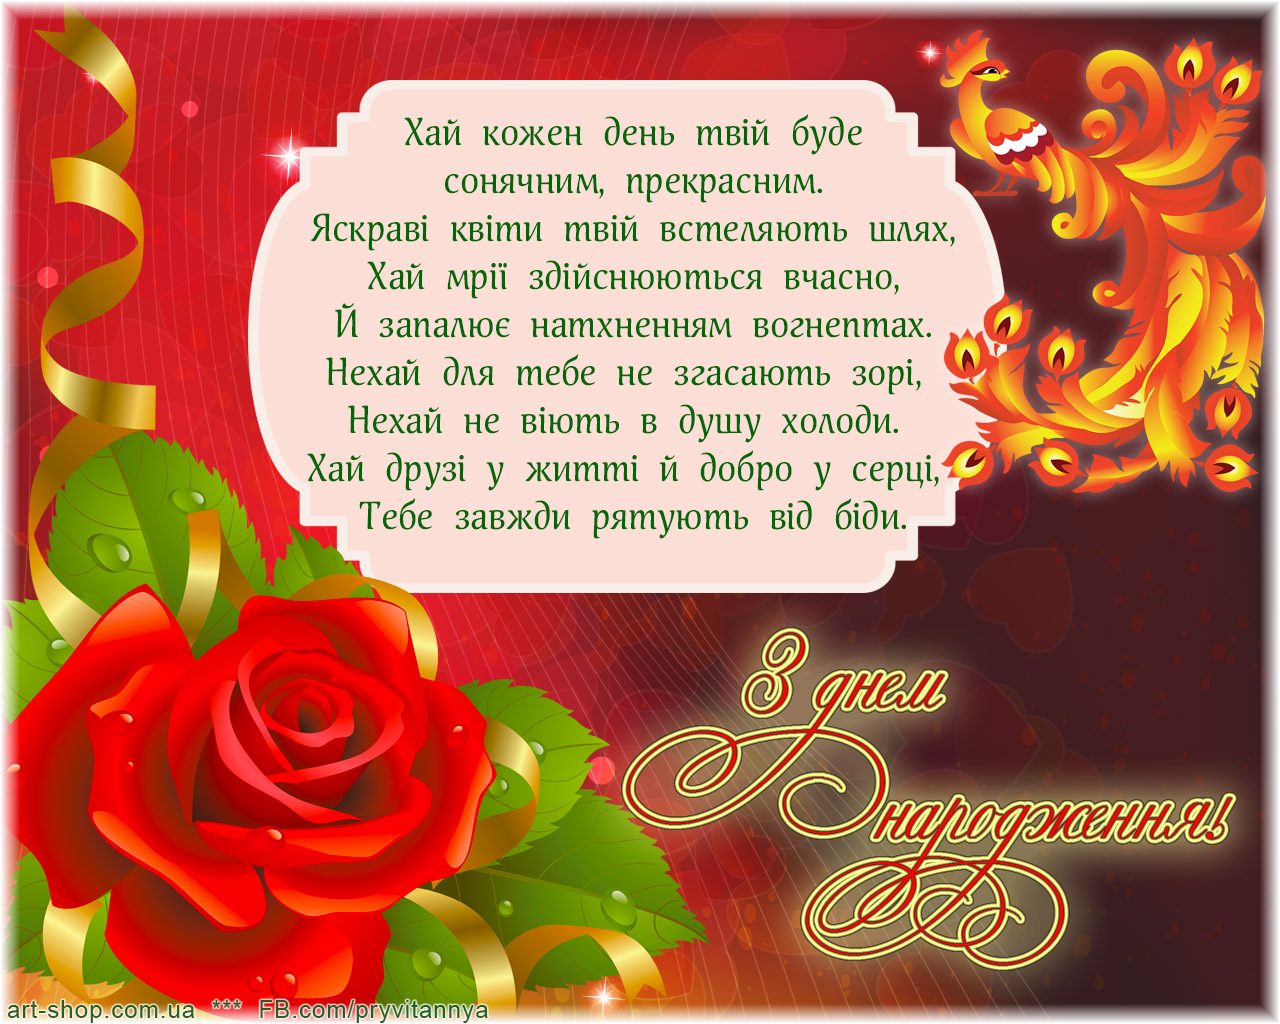 Поздравить с днем рождения на украинском. Привітання з днем народження. Открытка с днем рождения на украинском. Поздравления с днём рождения на украинском языке. Красивое поздравление с днём рождения на украинском языке.